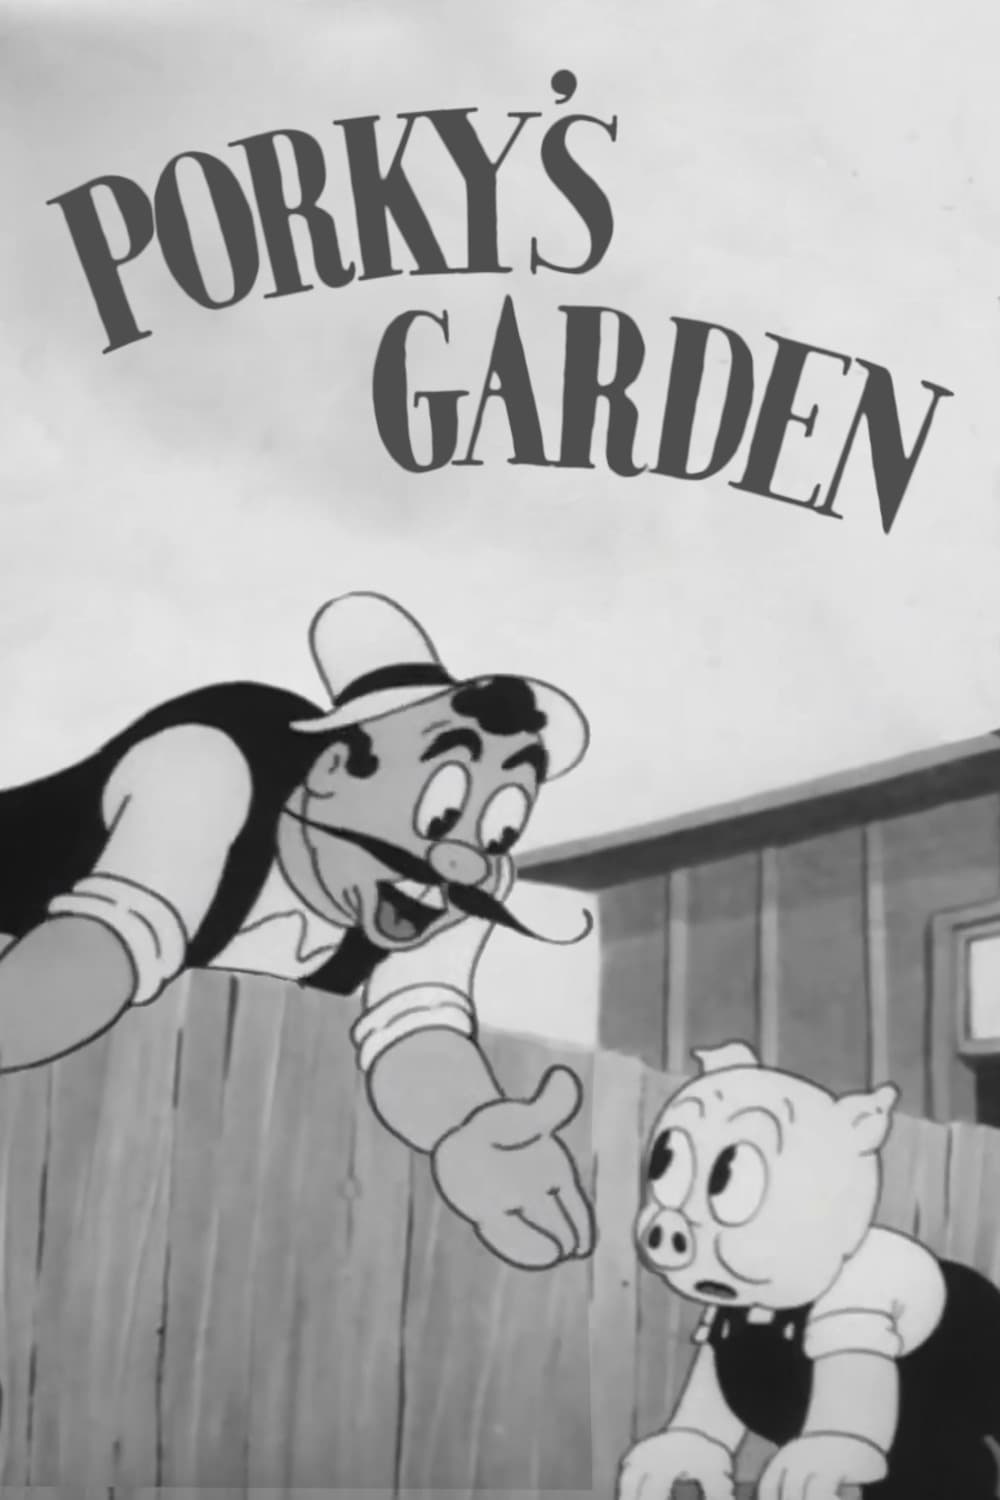 Porky's Garden (1937)